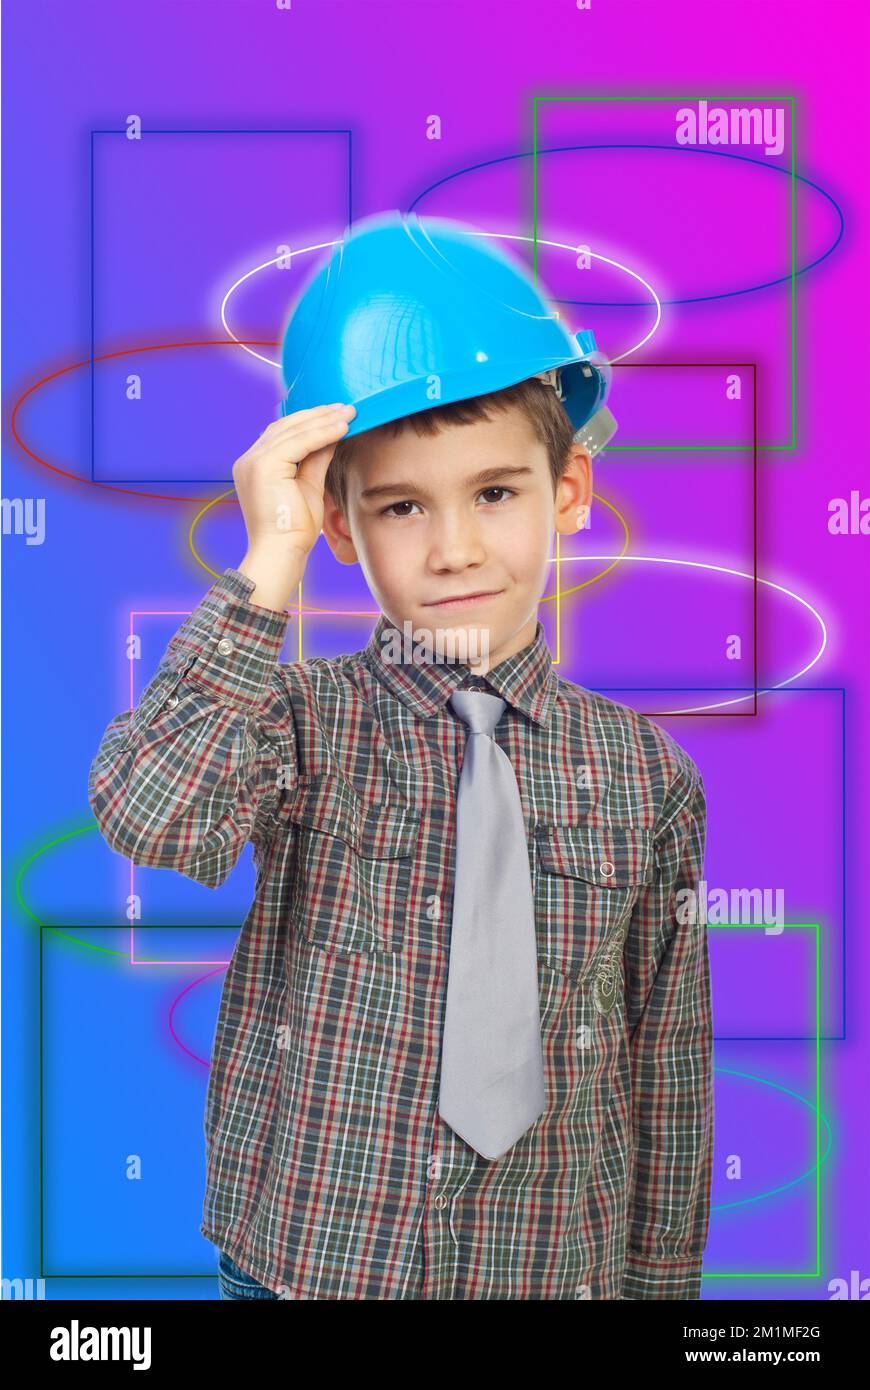 Cute kid futur architecte holding blue casque isolé sur fond blanc Banque D'Images